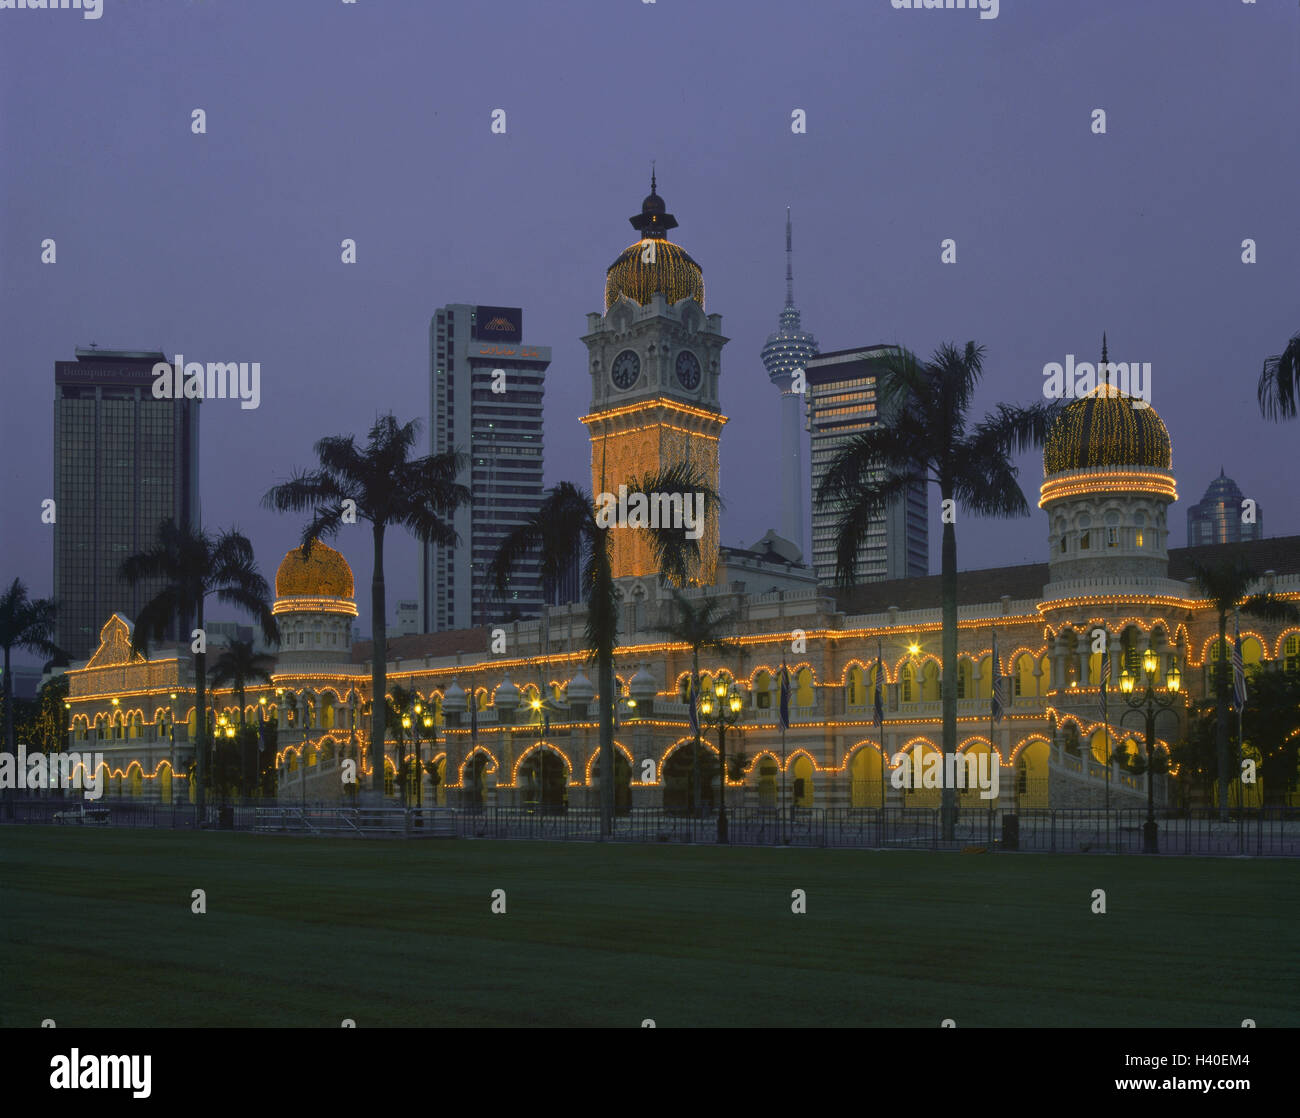 La Malaisie, Kuala Lumpur, Merdeka Square,, le sultan Abdul Samad Building, l'éclairage, la tombée de l'Asie, le capital, l'indépendance de l'espace, l'espace, parc, d'un bâtiment, d'architecture, la place d'intérêt, des lumières, tour de télévision, à l'extérieur Banque D'Images